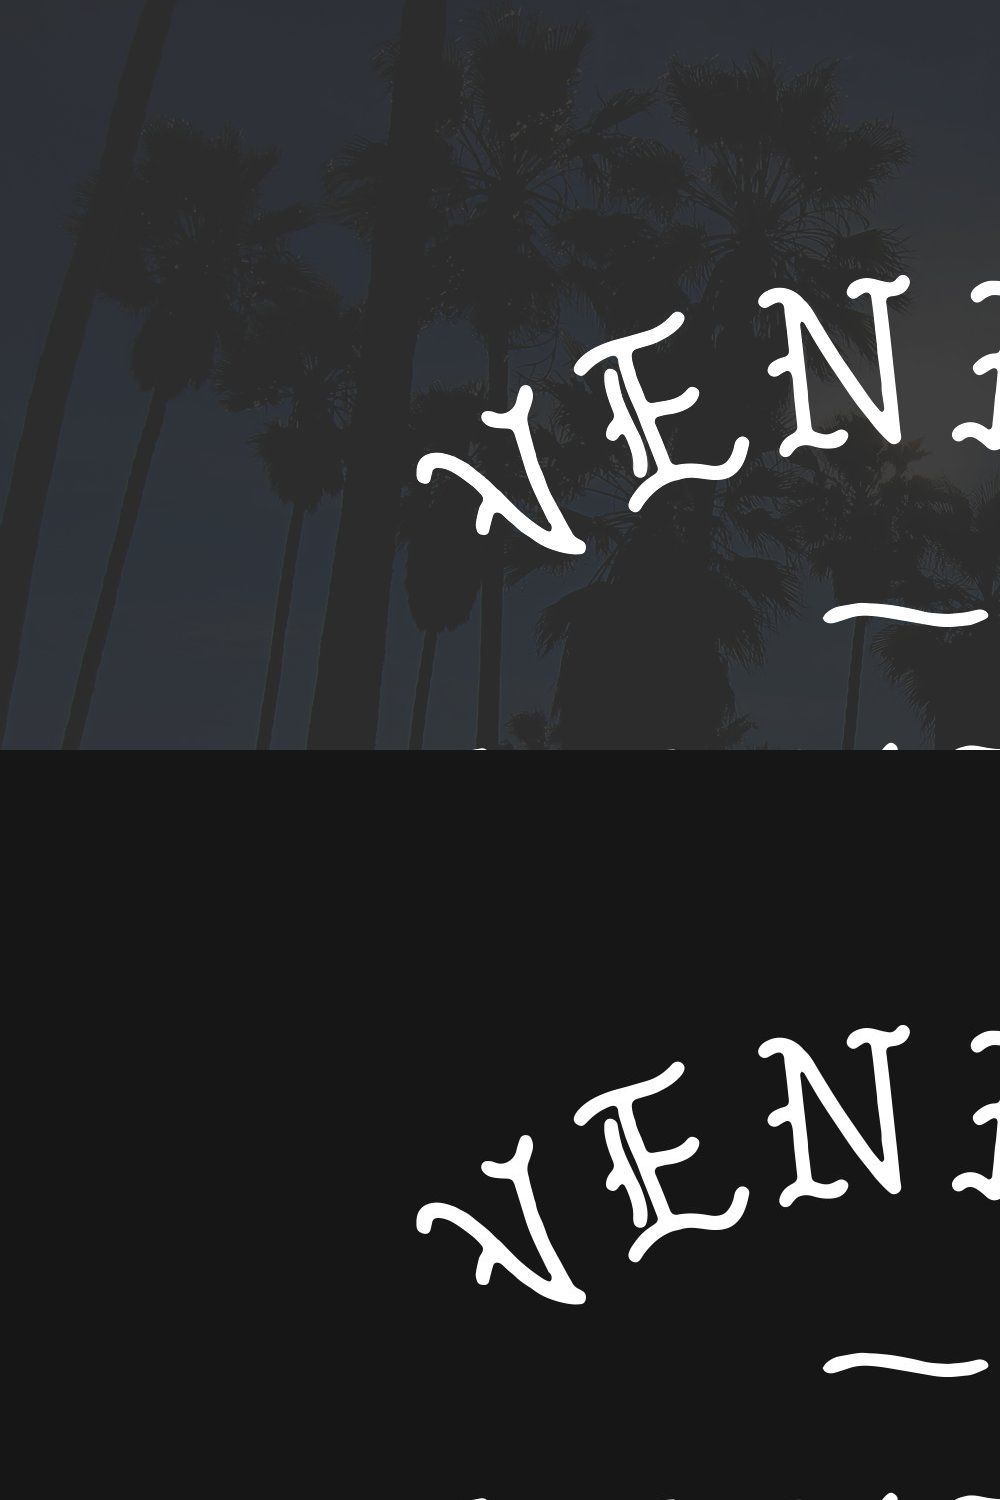 Venice Gothic - A Monoline Typeface pinterest preview image.